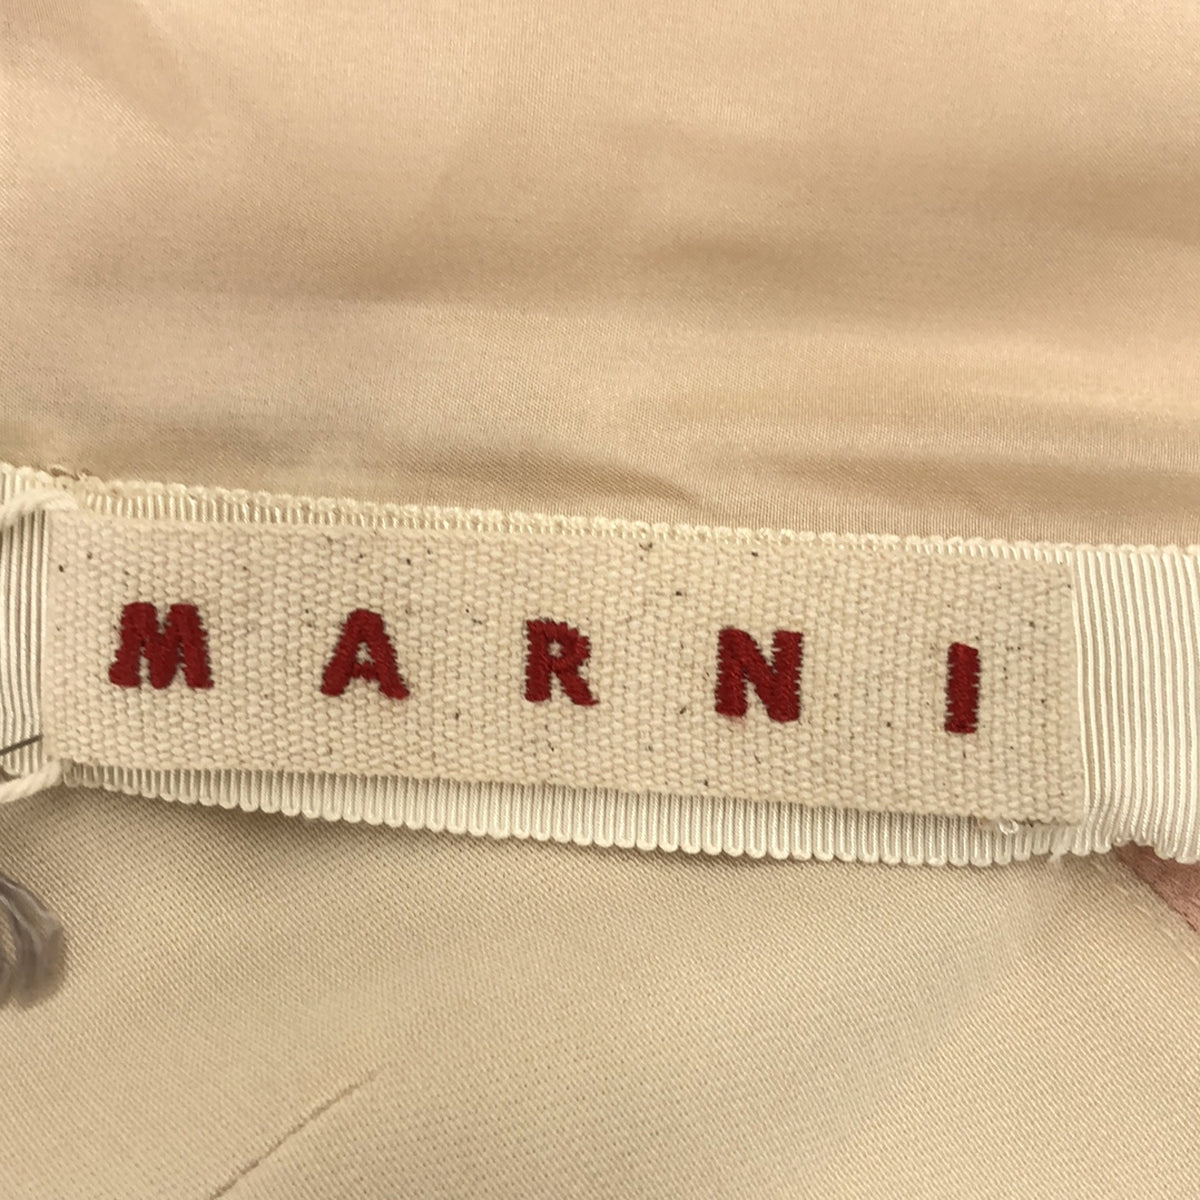 MARNI / マルニ | 2019AW | グラデーション クルーネックワンピース | 38 | レディース